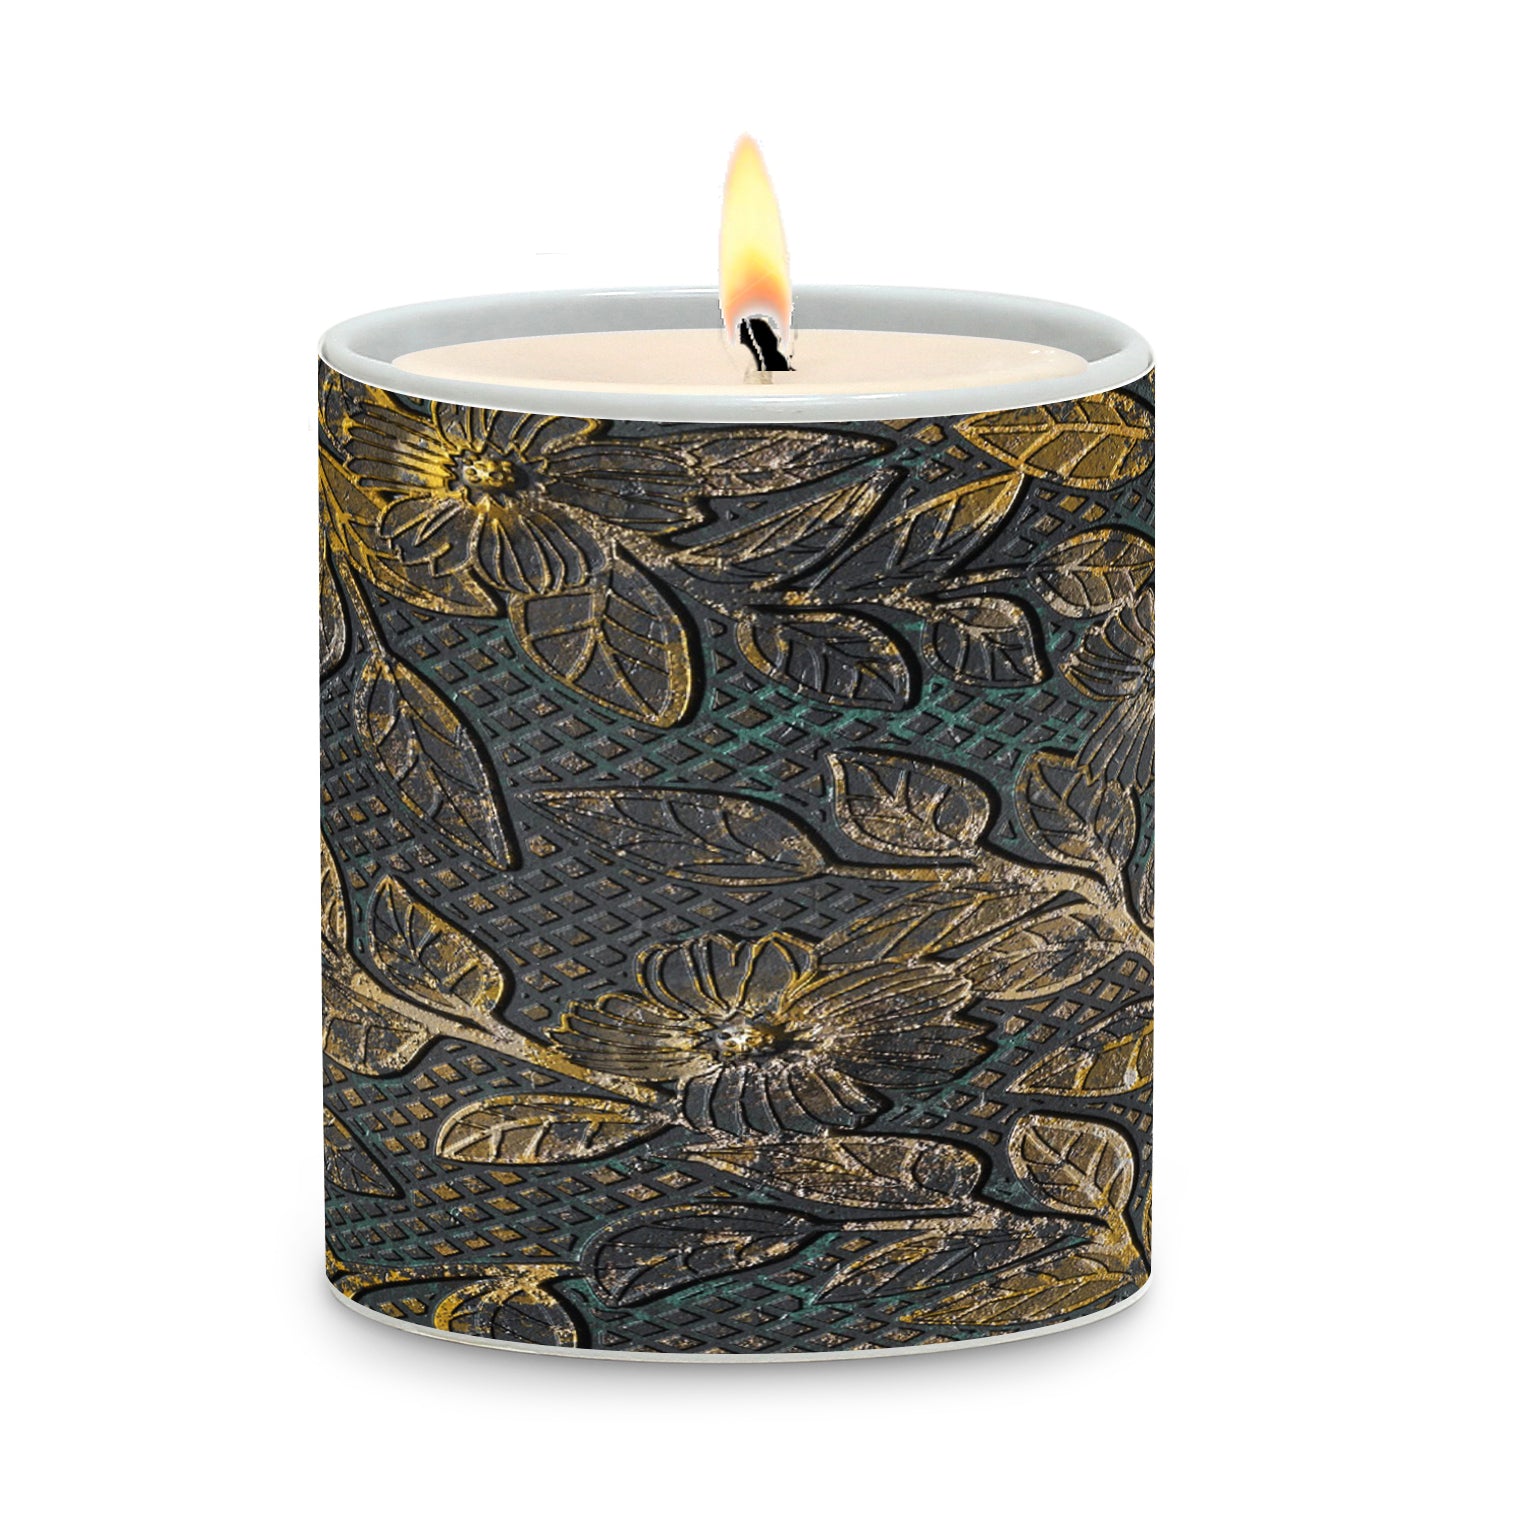 SUBLIMART: Tiles - Porcelain Soy Wax Candle (Design #TIL07)